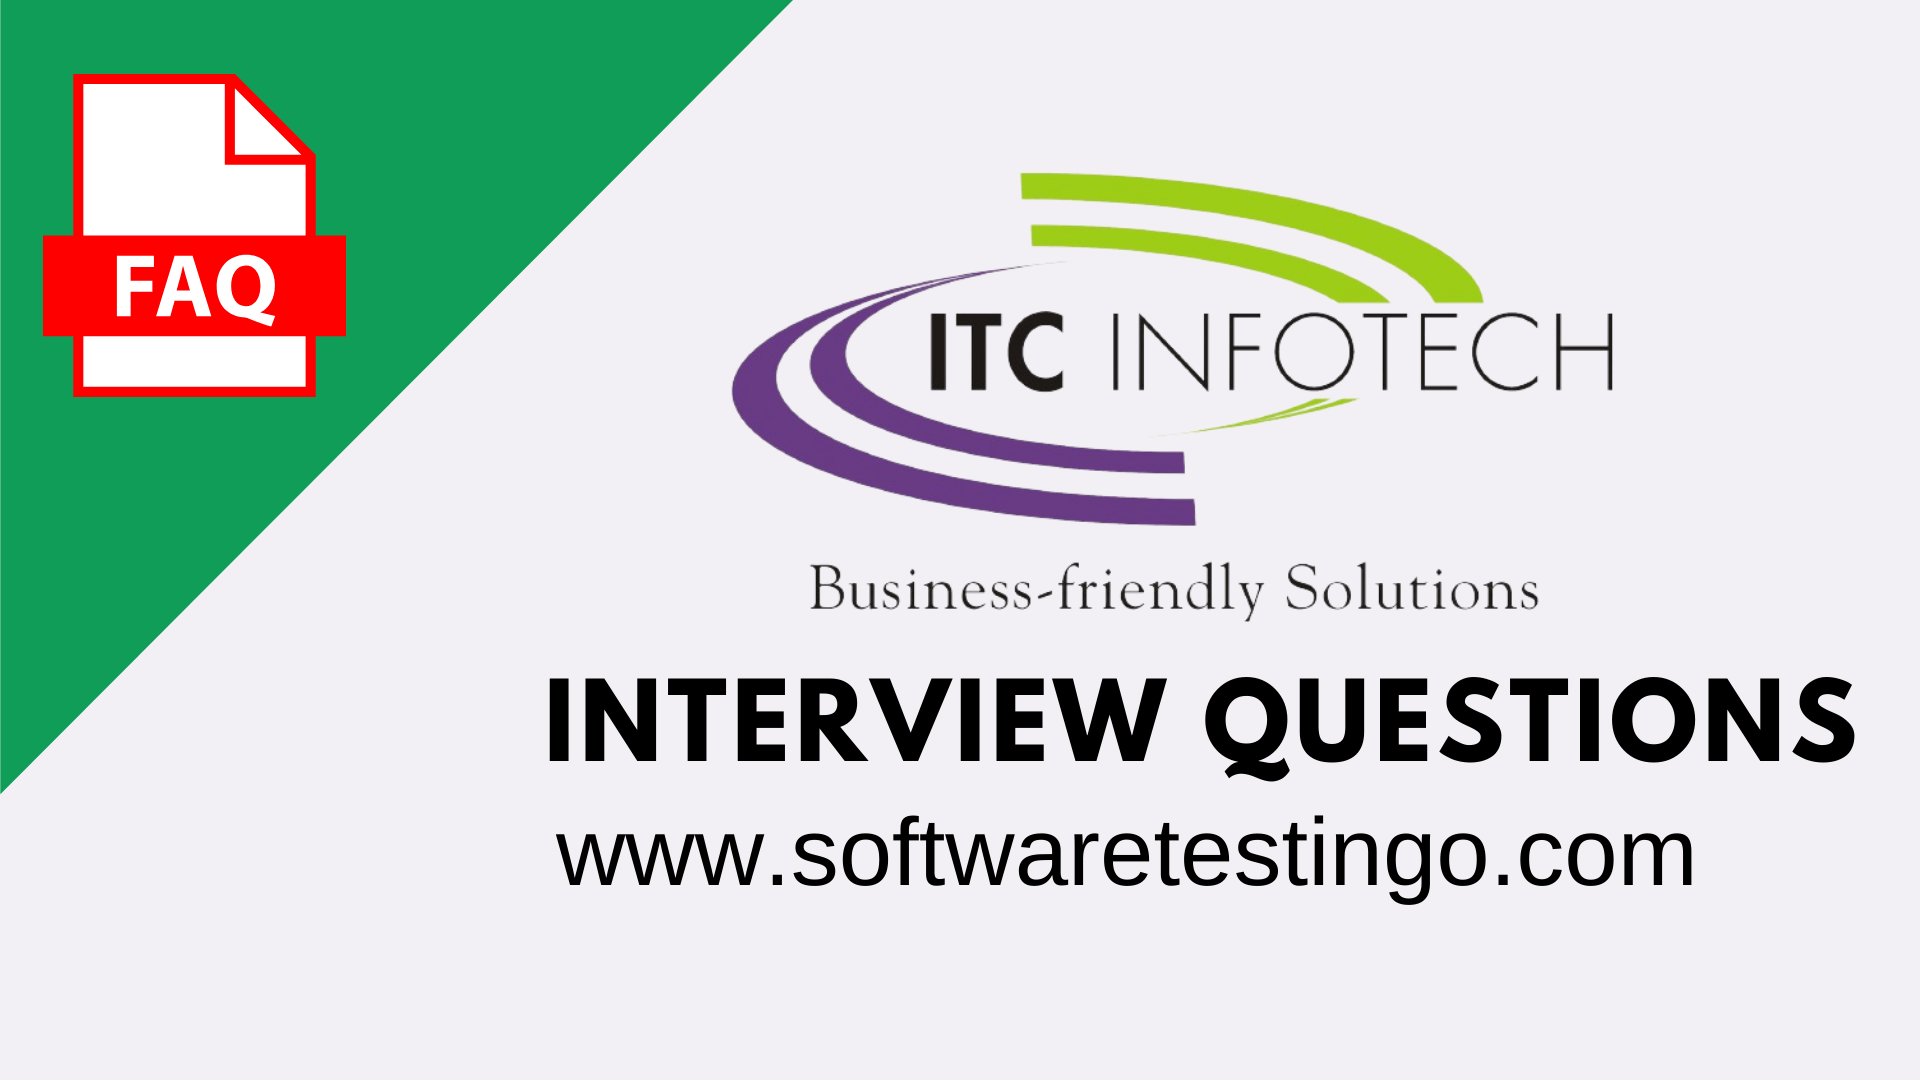 ITC Infotech UFT Java Selenium Interview Questions New 2022